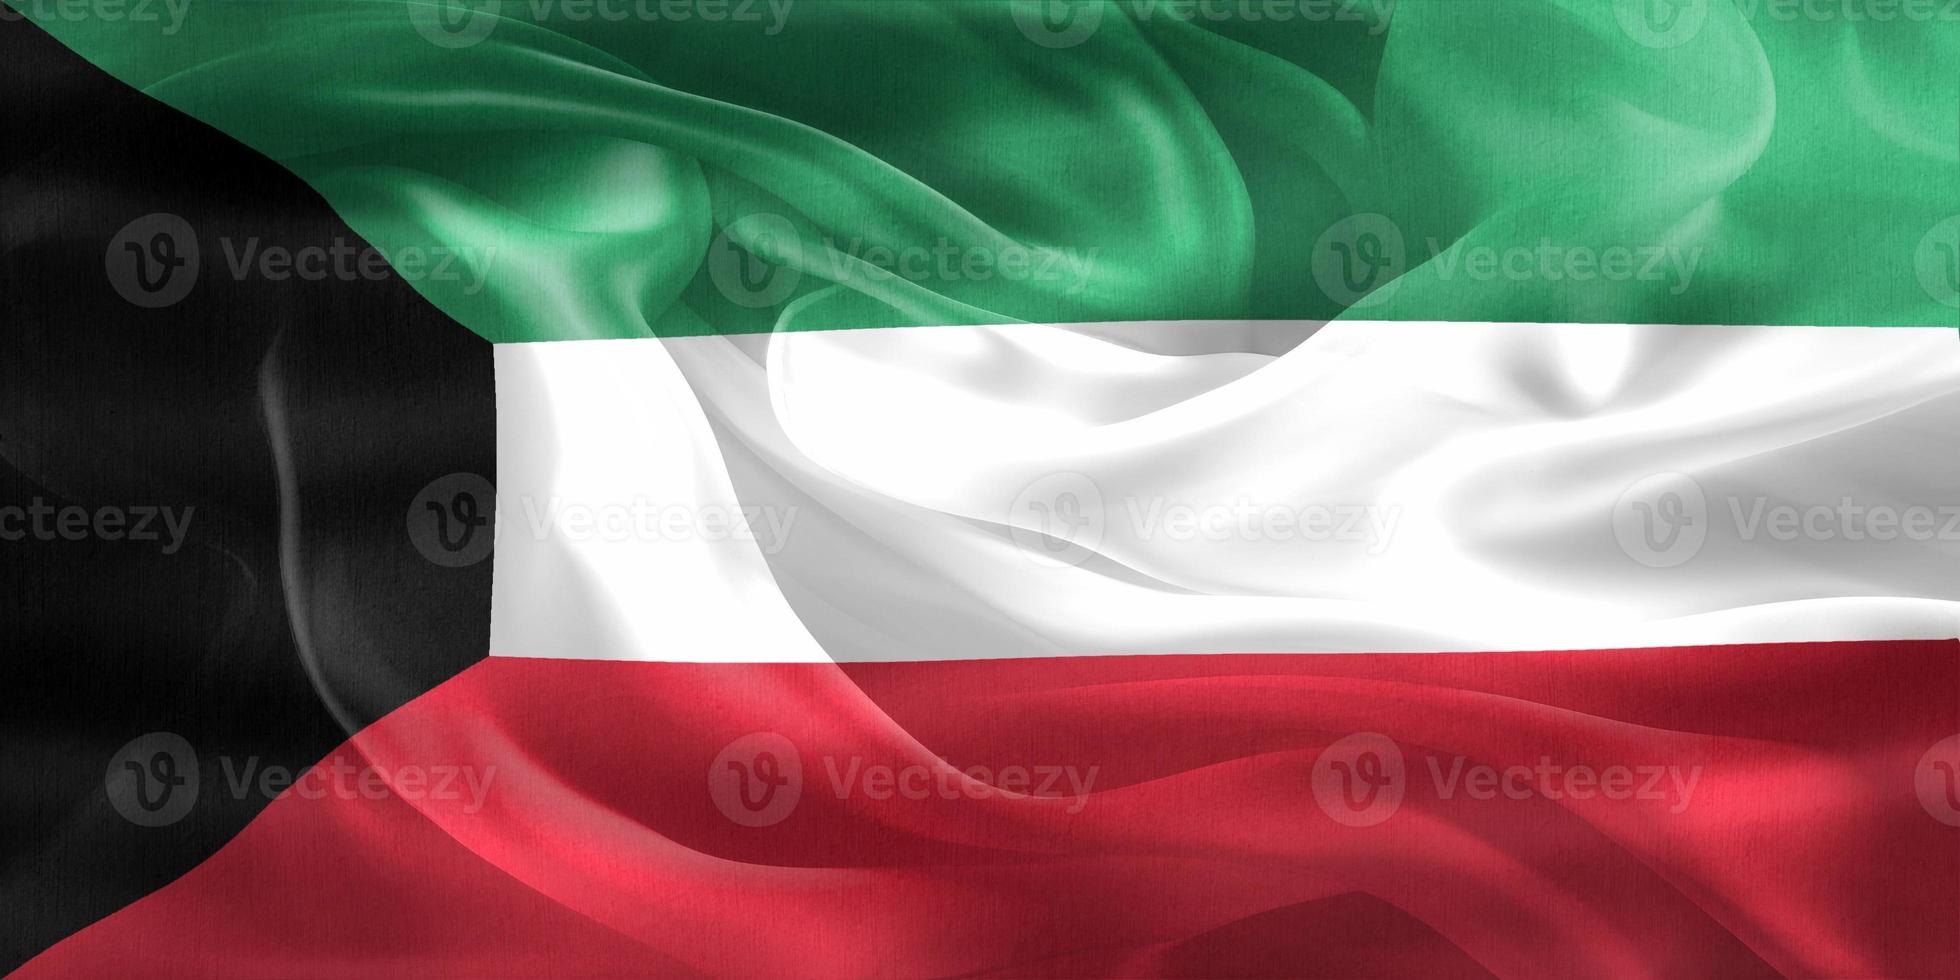 3d-illustration d'un drapeau du koweït - drapeau en tissu ondulant réaliste photo